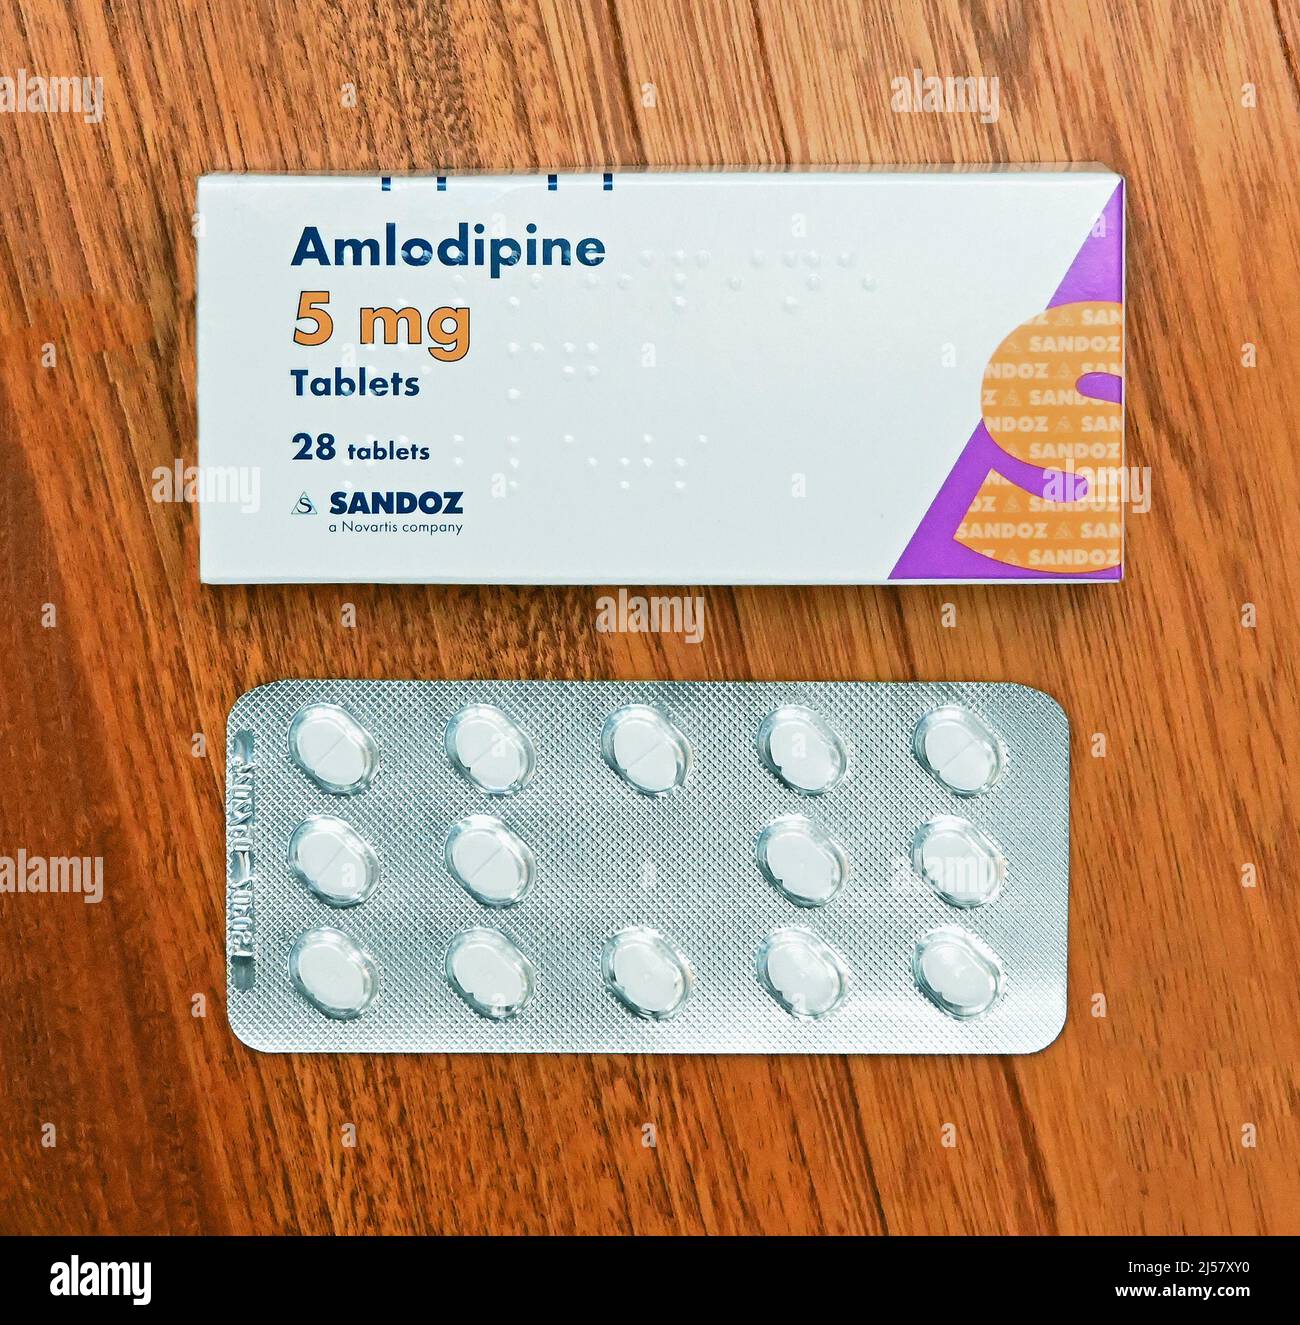 Foto der Packung Amlodipin 5mg Tabletten. 28 Tabletten. Sandoz ist ein  Novartis-Unternehmen Stockfotografie - Alamy